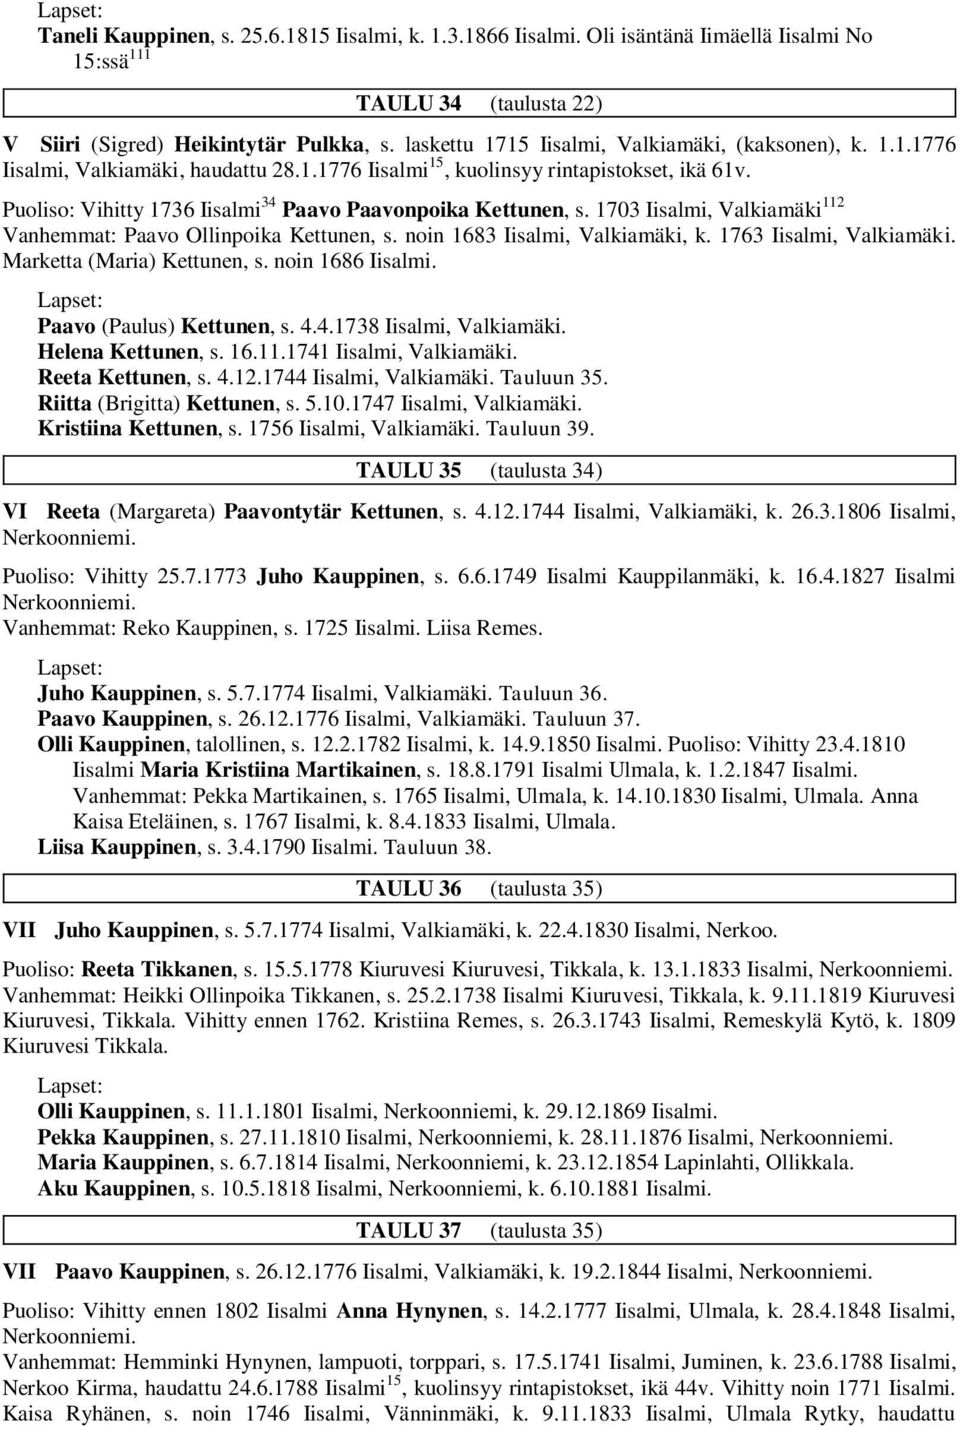 Puoliso: Vihitty 1736 Iisalmi 34 Paavo Paavonpoika Kettunen, s. 1703 Iisalmi, Valkiamäki 112 Vanhemmat: Paavo Ollinpoika Kettunen, s. noin 1683 Iisalmi, Valkiamäki, k. 1763 Iisalmi, Valkiamäki.